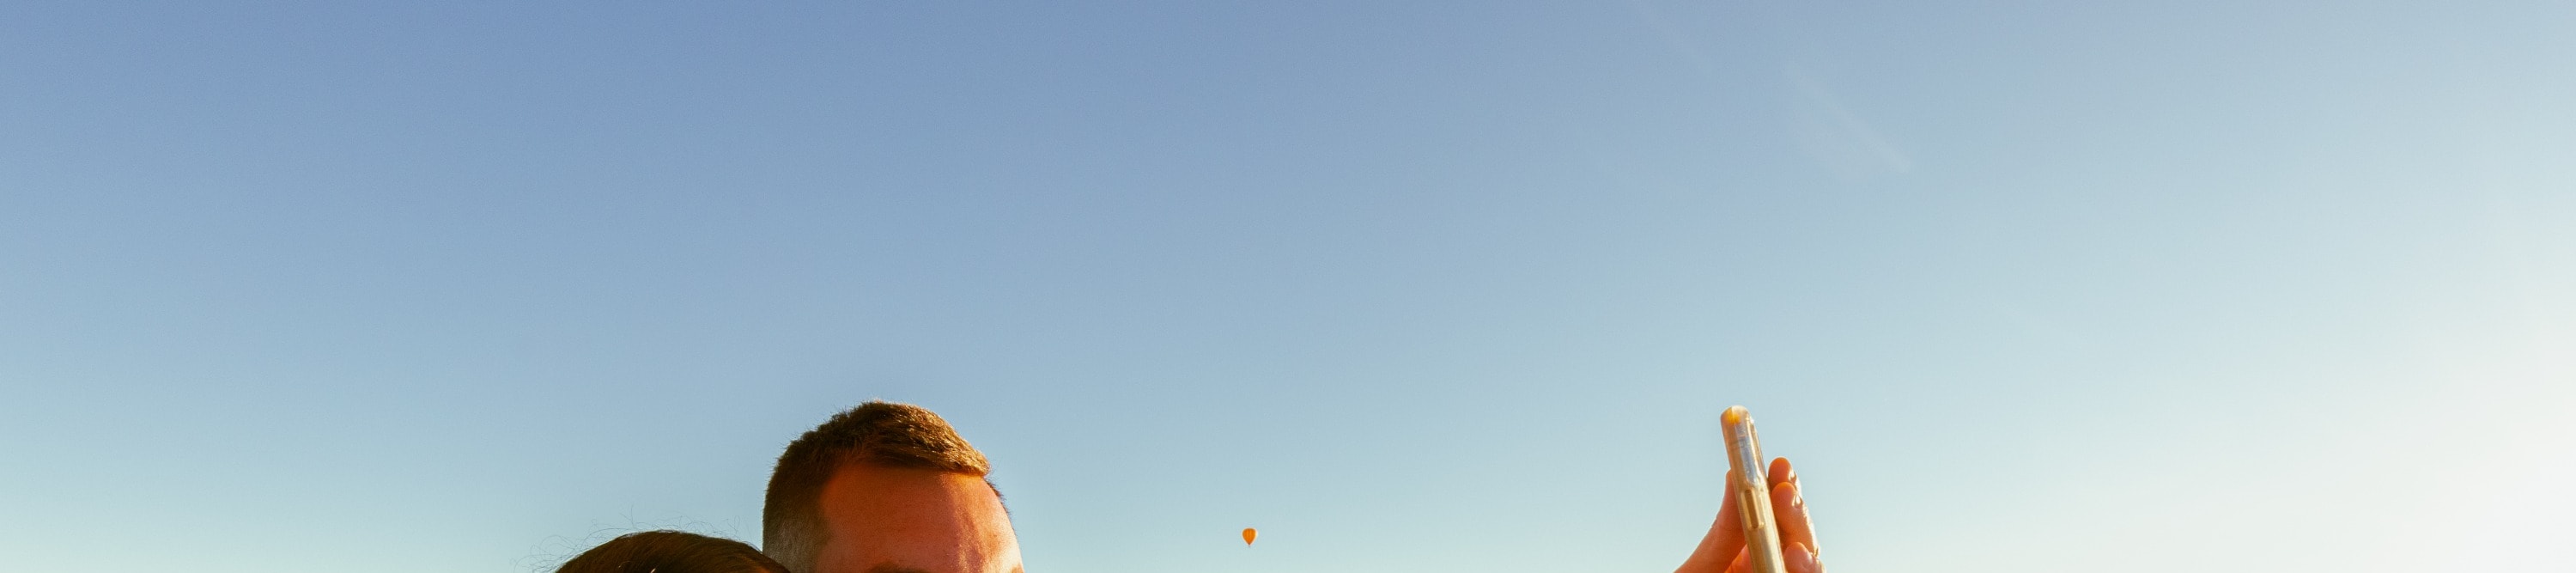 熱氣球飛行體驗（含早餐＆羊駝牧場）